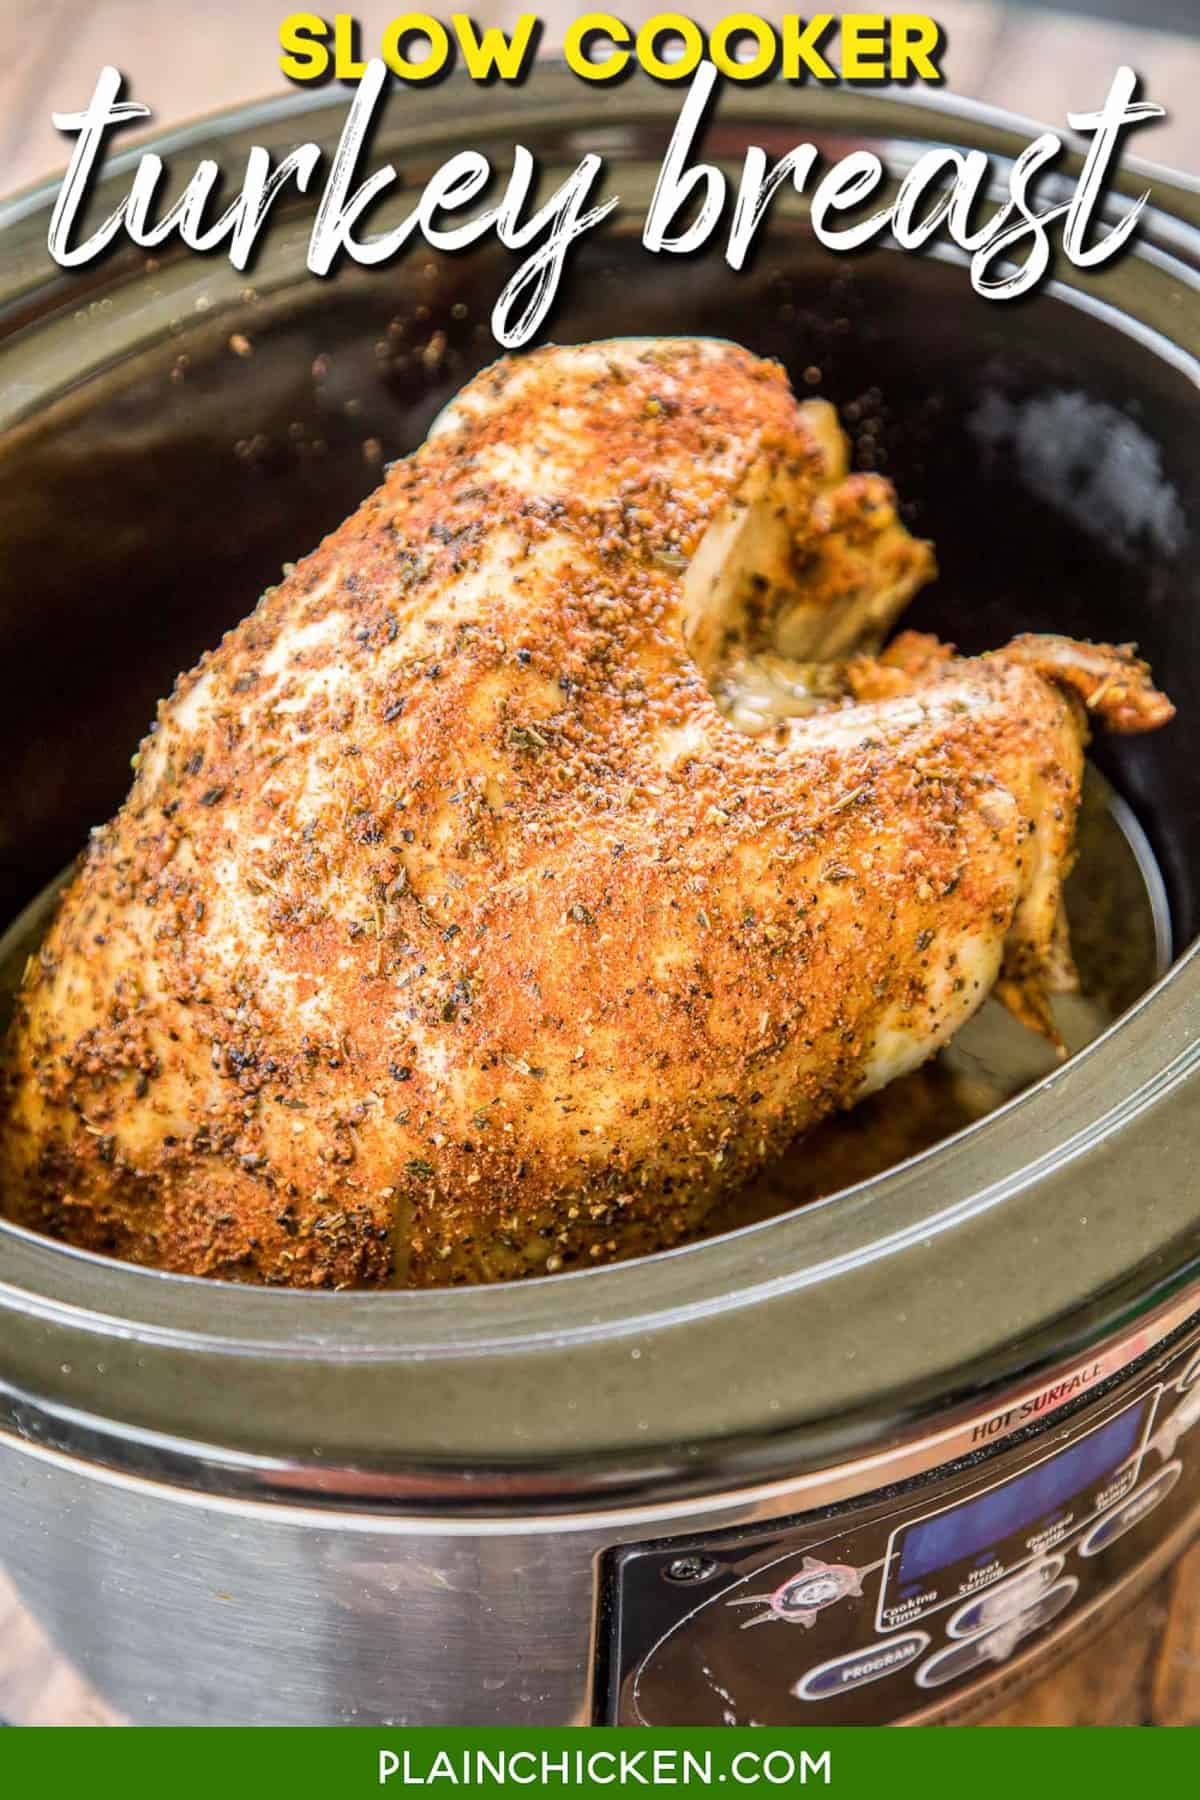 https://www.plainchicken.com/wp-content/uploads/2017/11/slow-cooker-turkey-breast.jpg